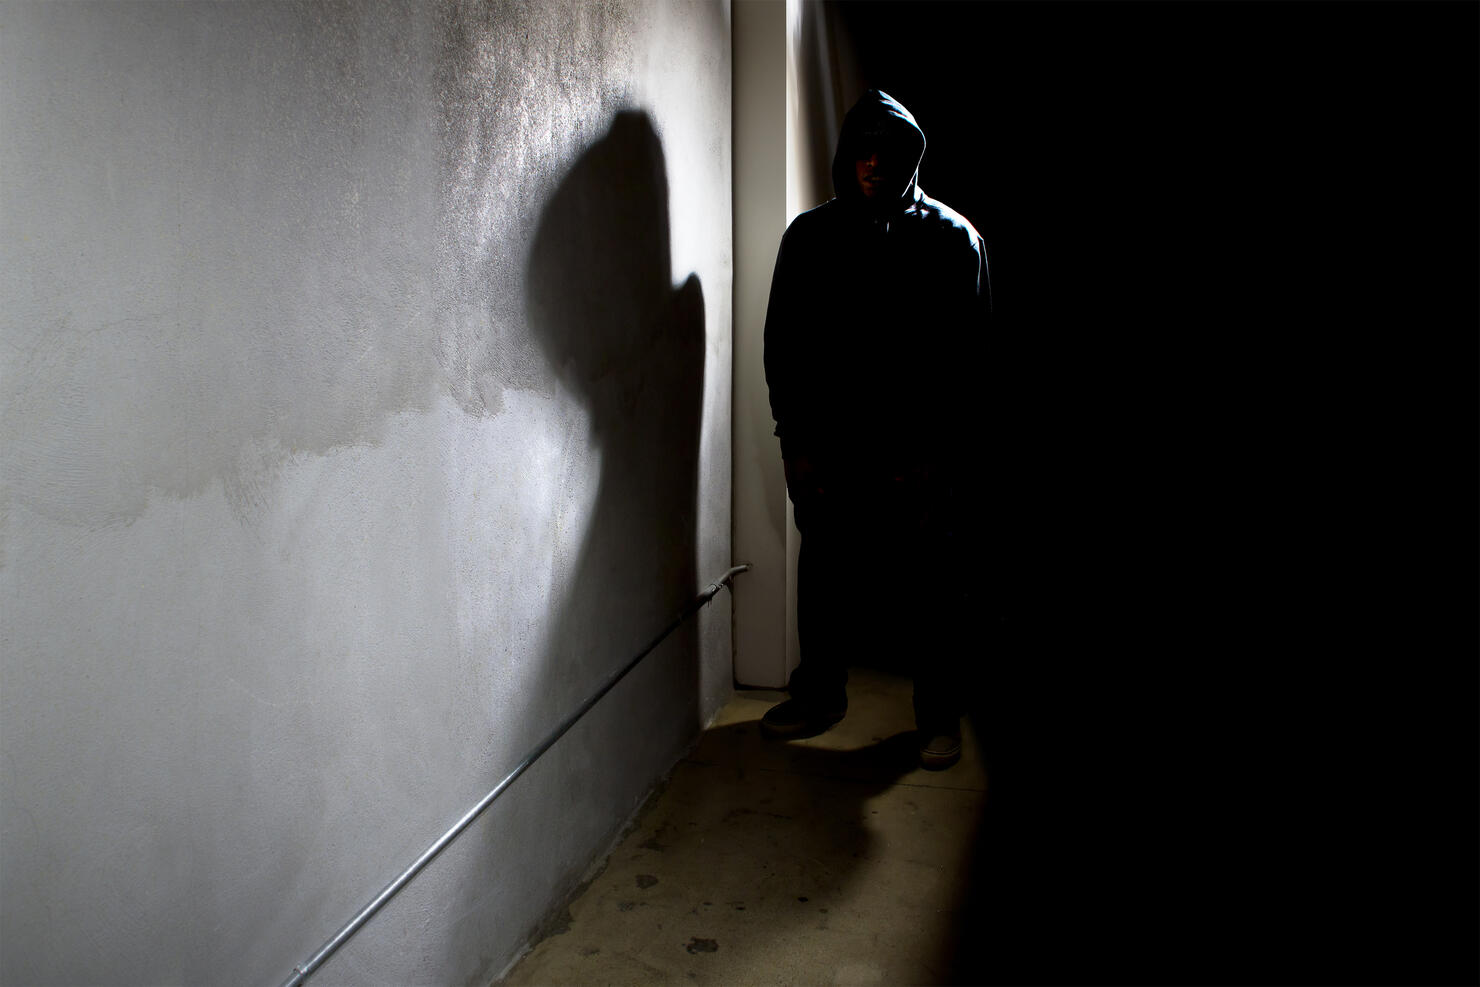 Stalker in a Dark Alley